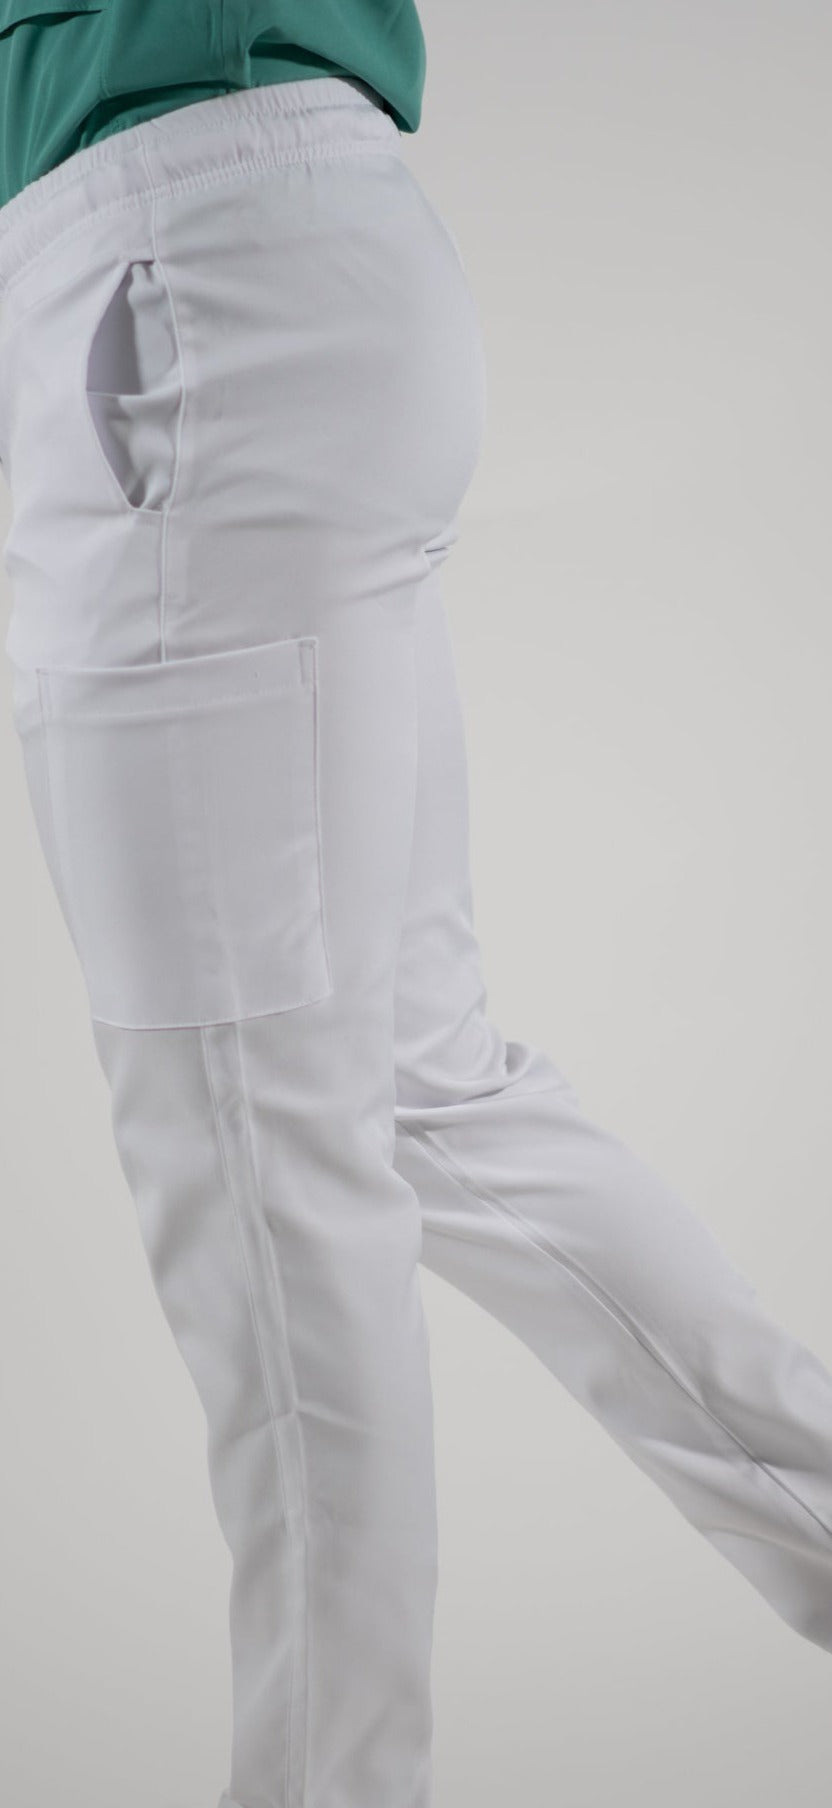 Pantalon Hombre 5 bolsas alviero antifluido Blanco.